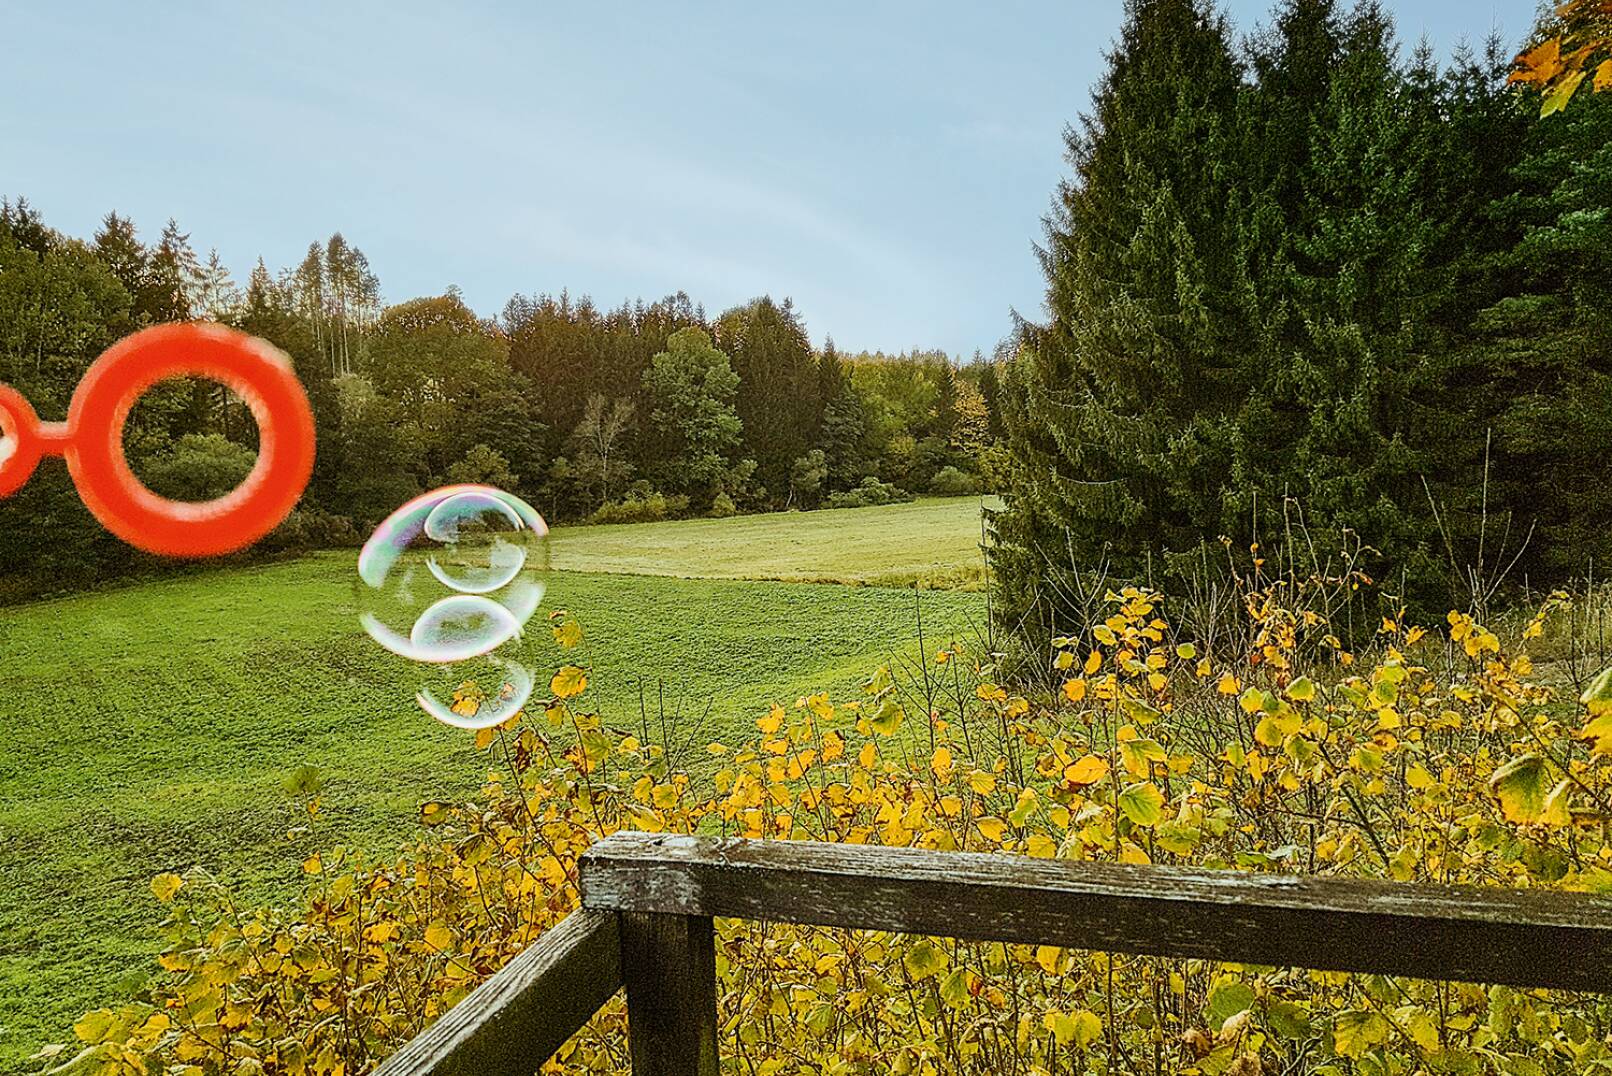 Seifenblasen für Windbestimmung - Mithilfe von Seifenblasen kann die Windrichtung eruiert werden. - © Dominik Steinhauser